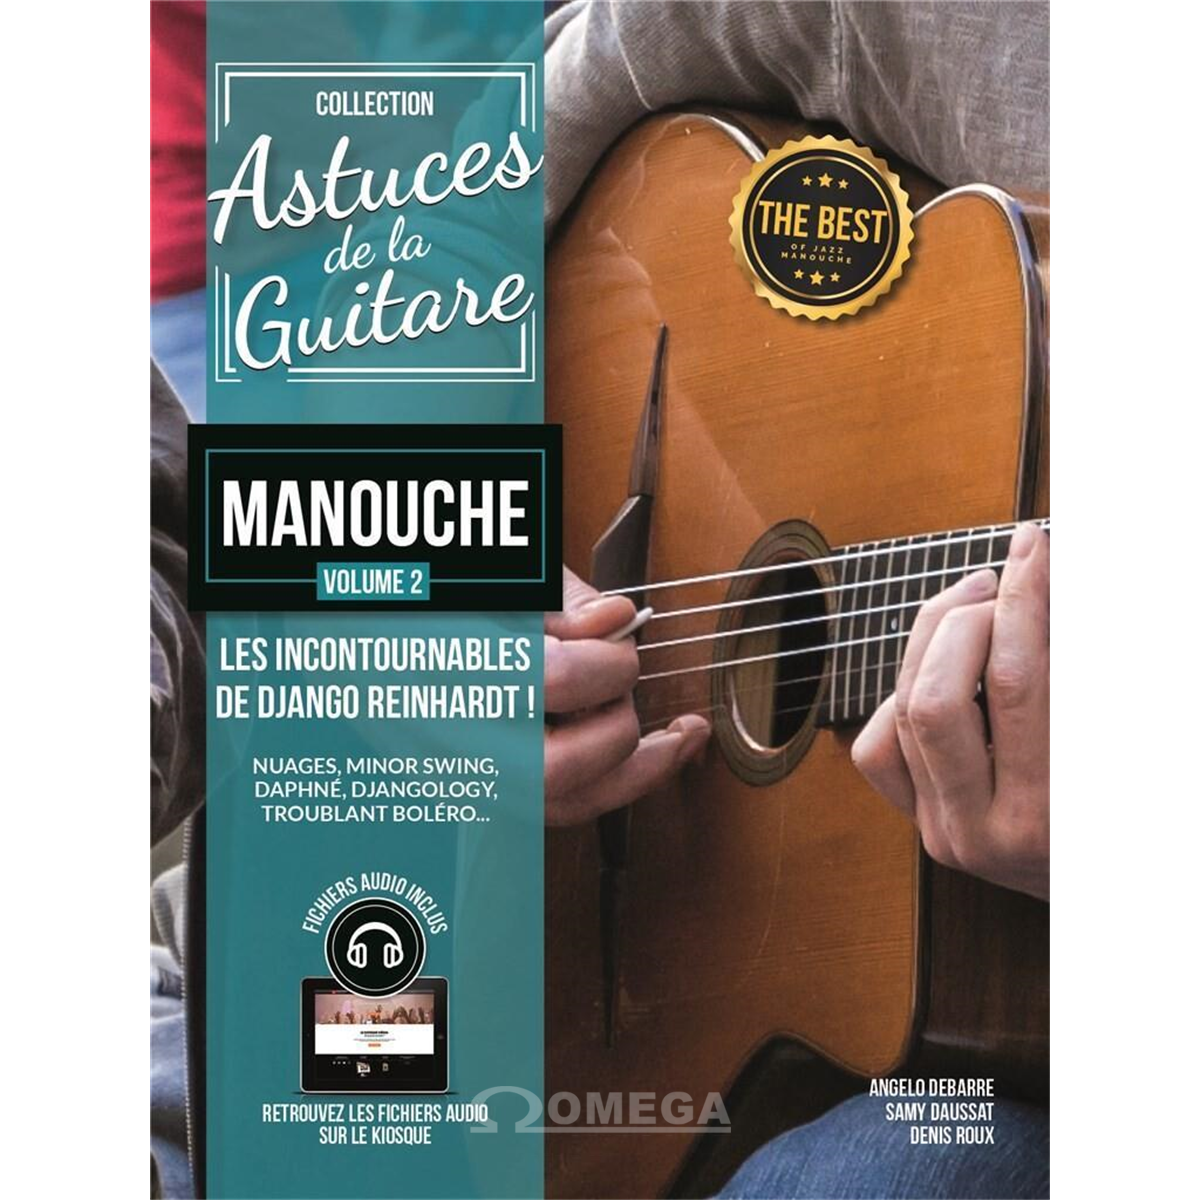 COUP DE POUCE Astuces de la guitare manouche vol.2